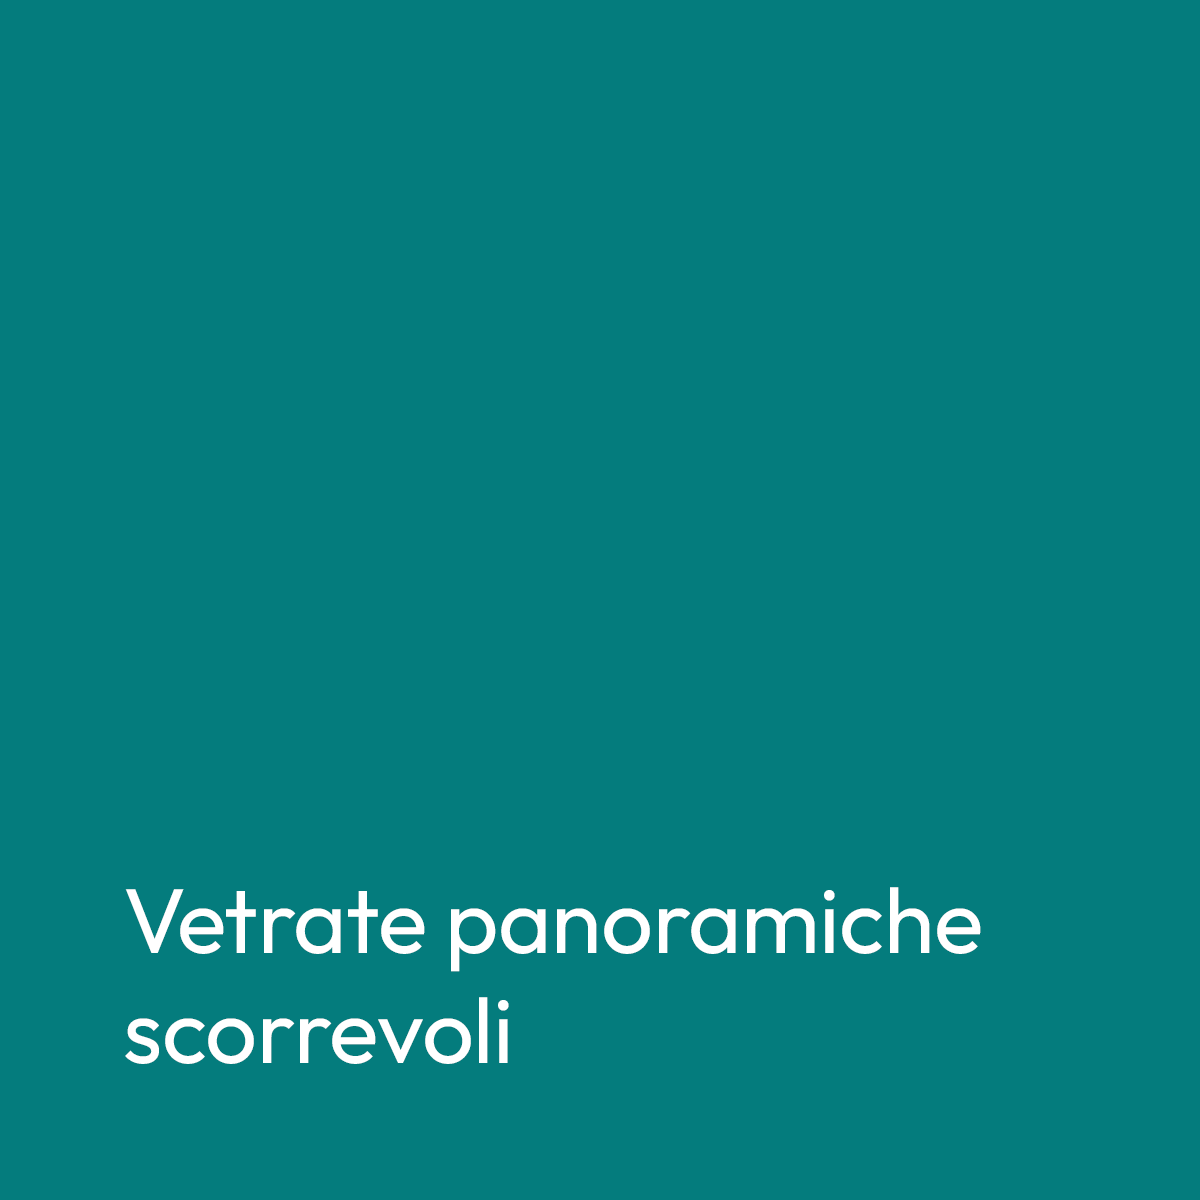 banner-title-vetratescorrevoli